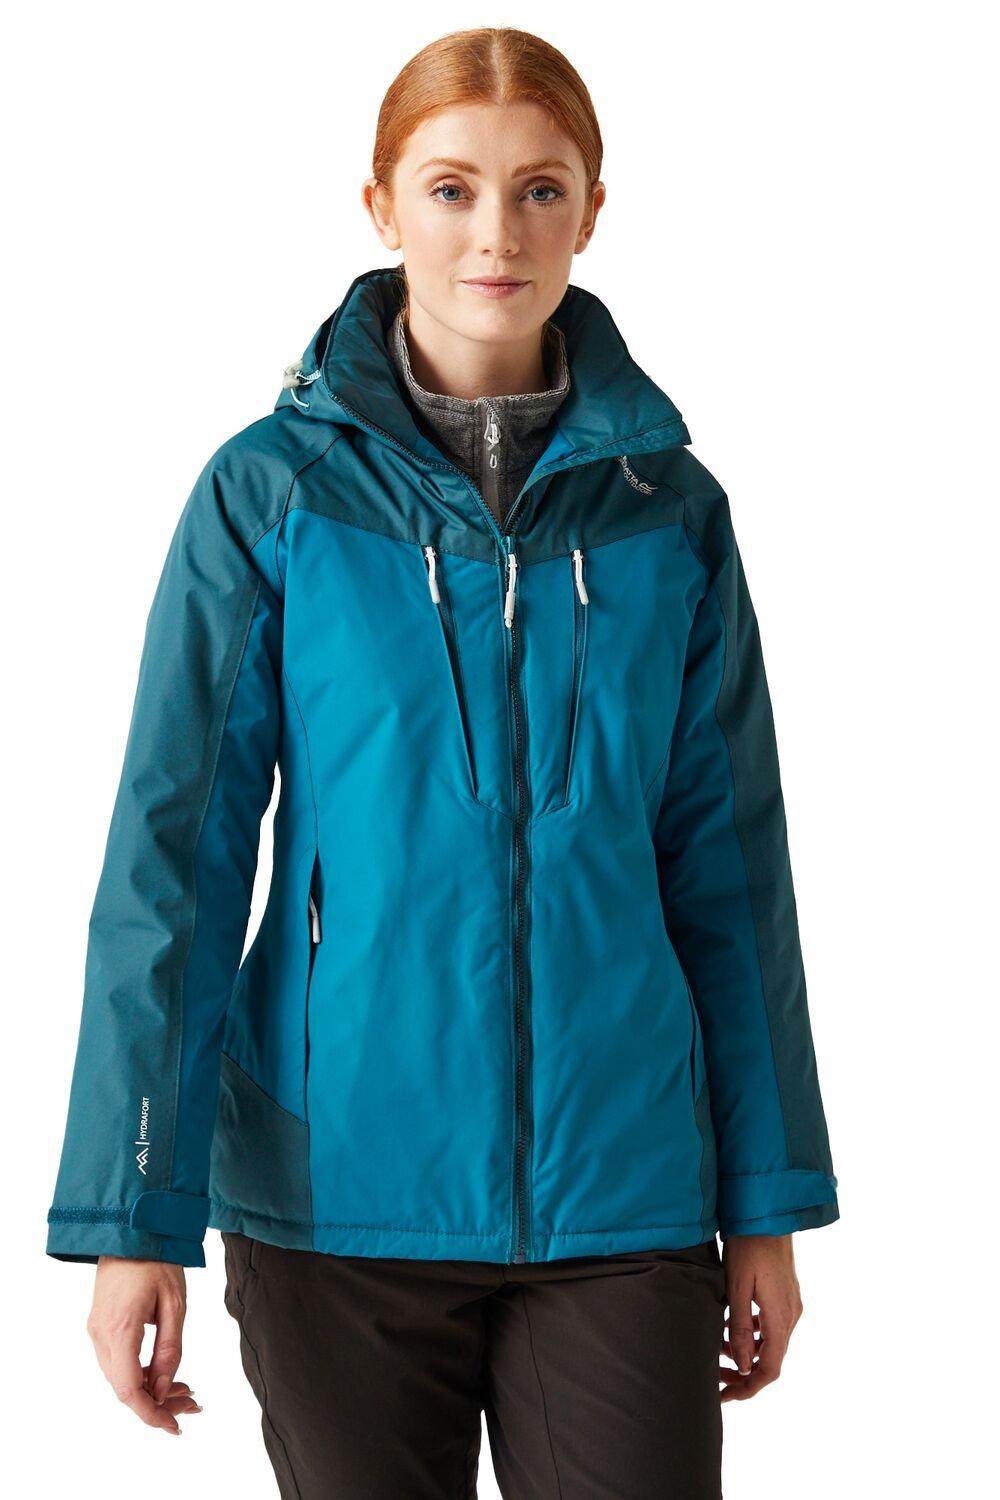 Winter 'Calderdale' Waterproof Jacket